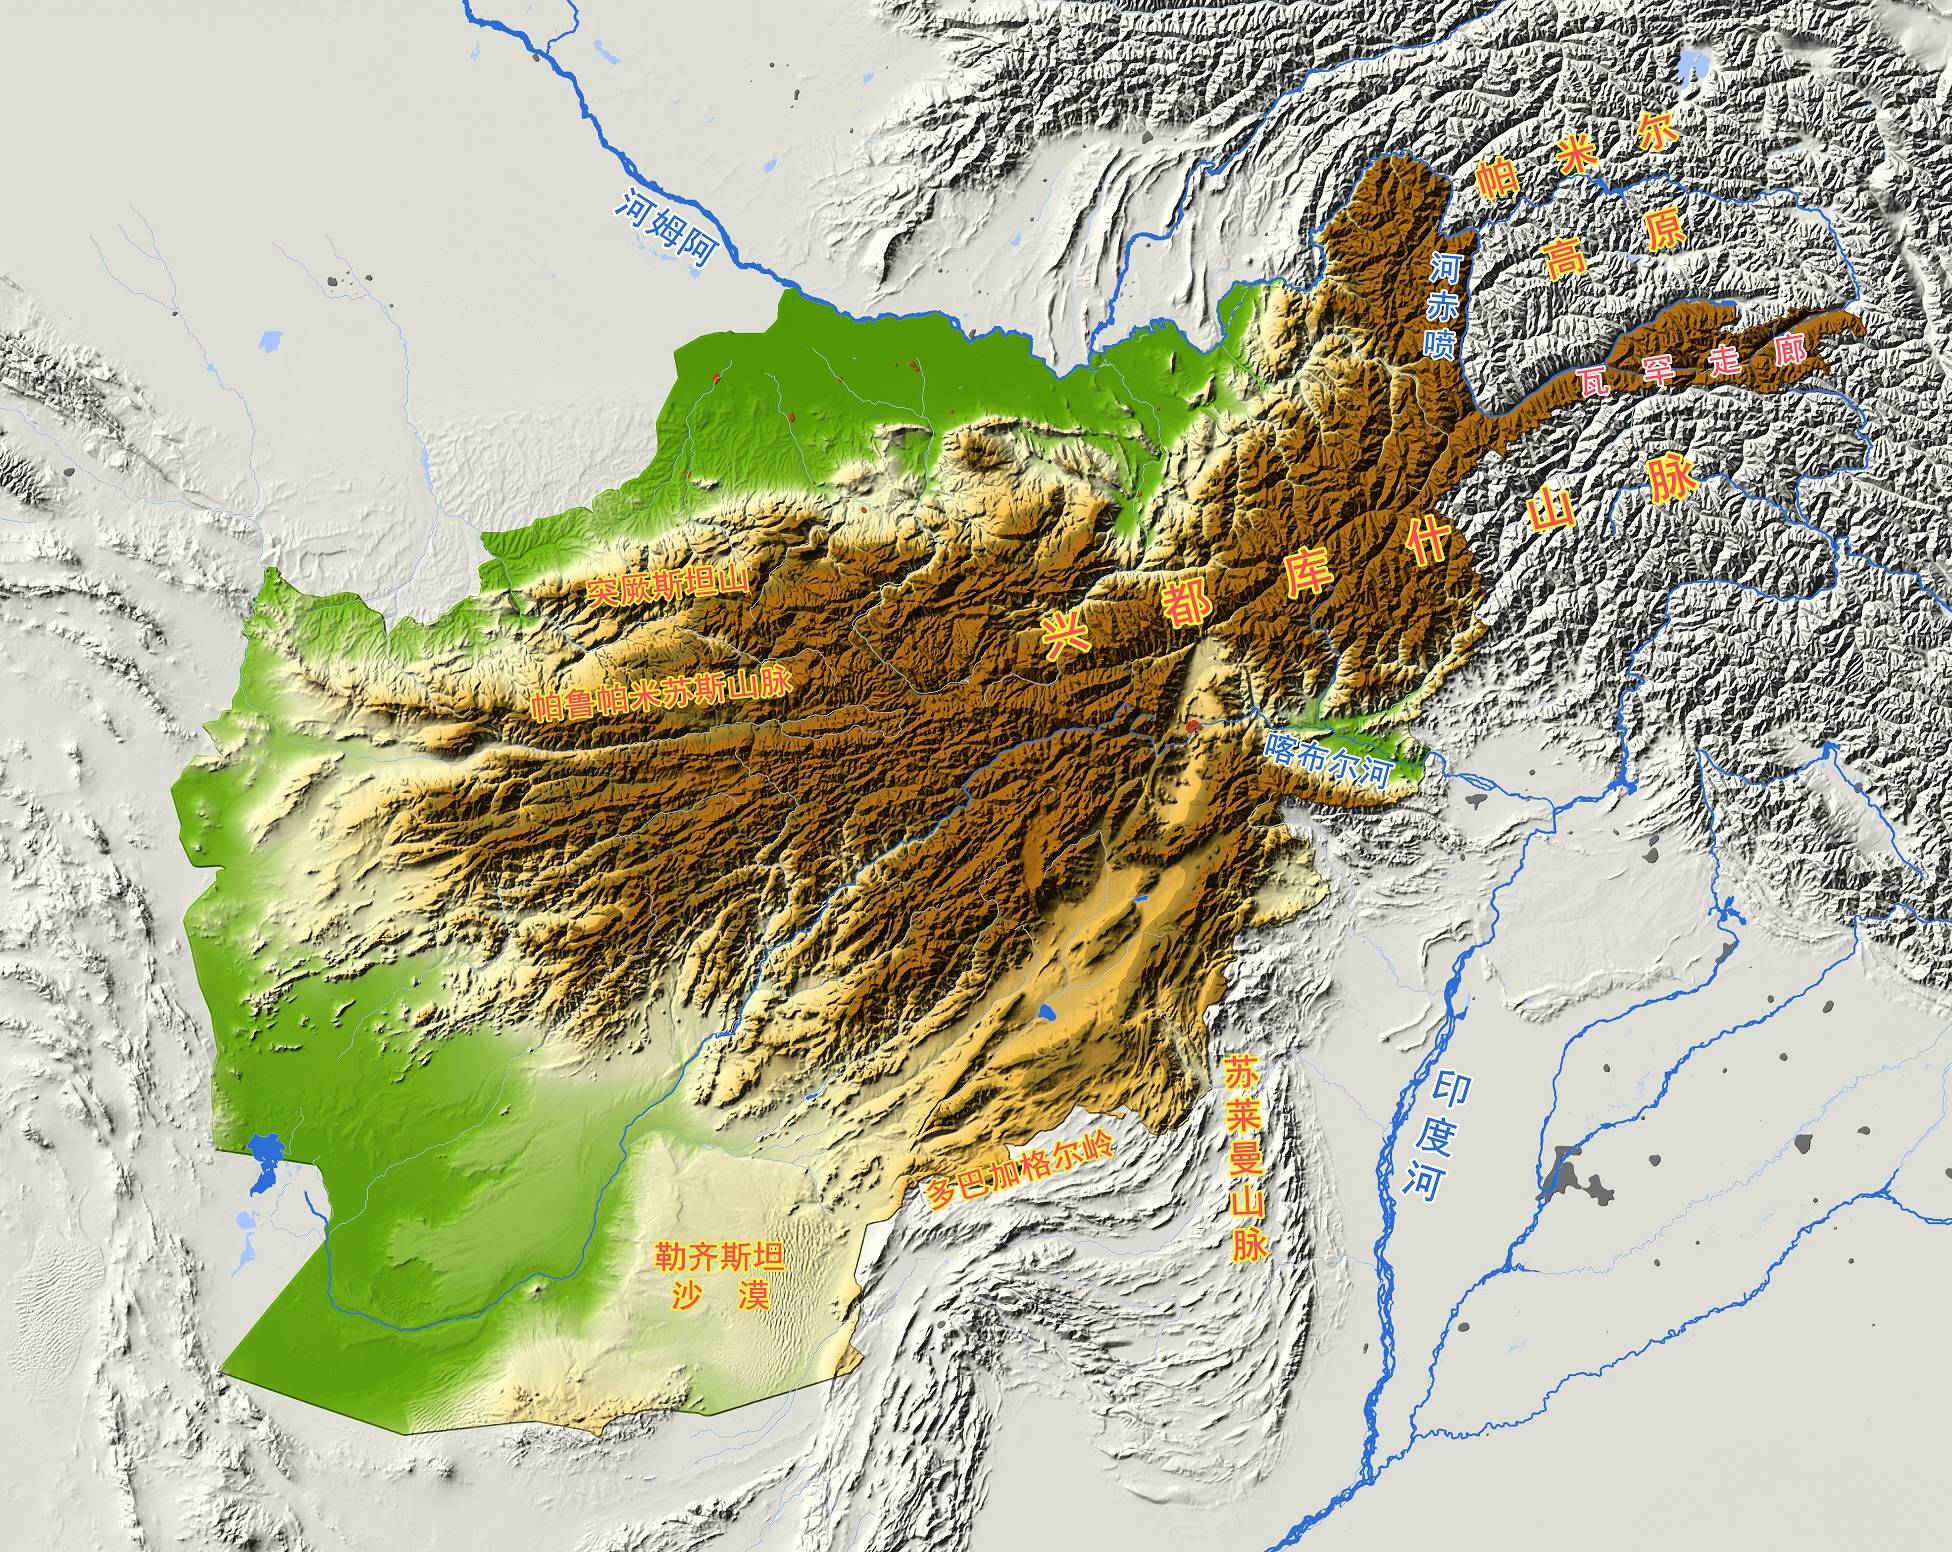 原创阿富汗伸出一只手,和中国相邻,瓦罕走廊是如何形成的?